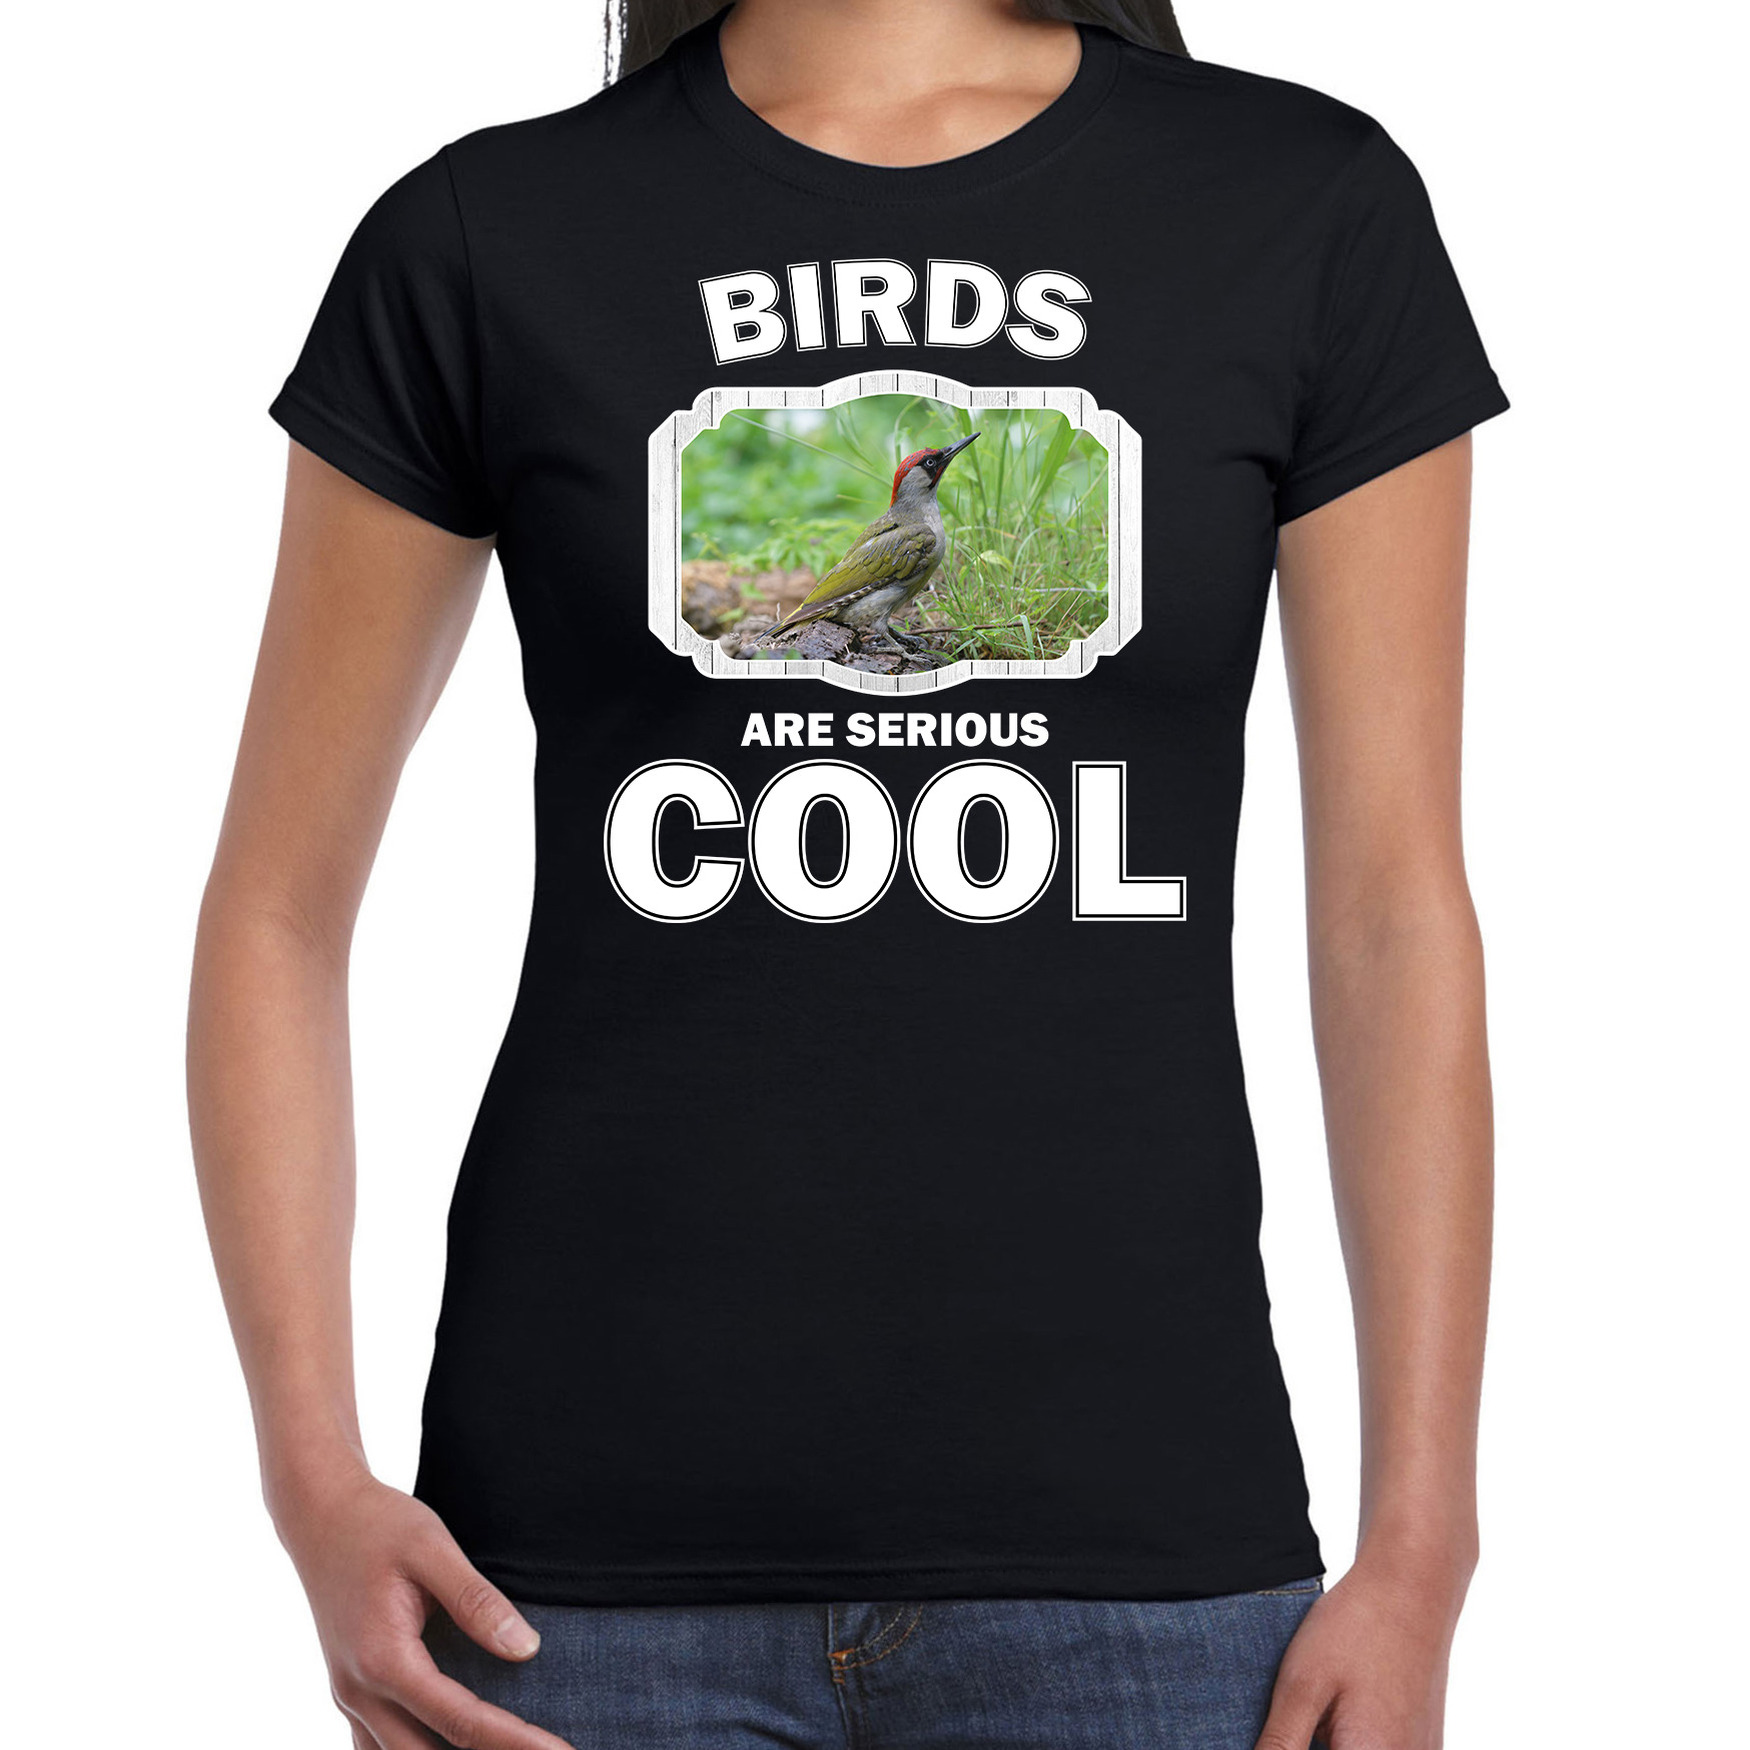 Dieren groene specht t-shirt zwart dames birds are cool shirt